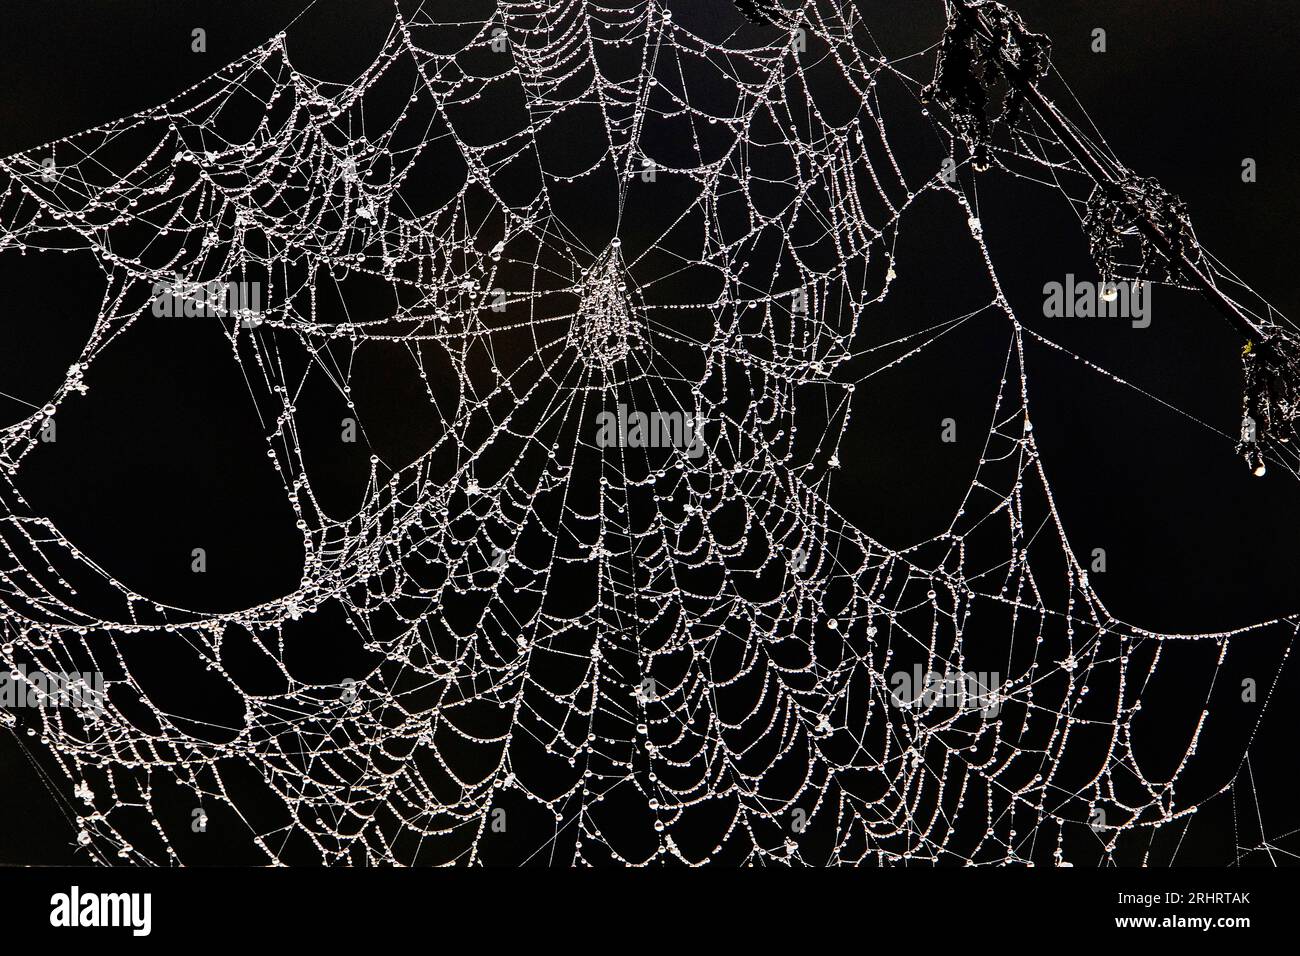 Toile d'araignée avec dewdrops, Allemagne Banque D'Images